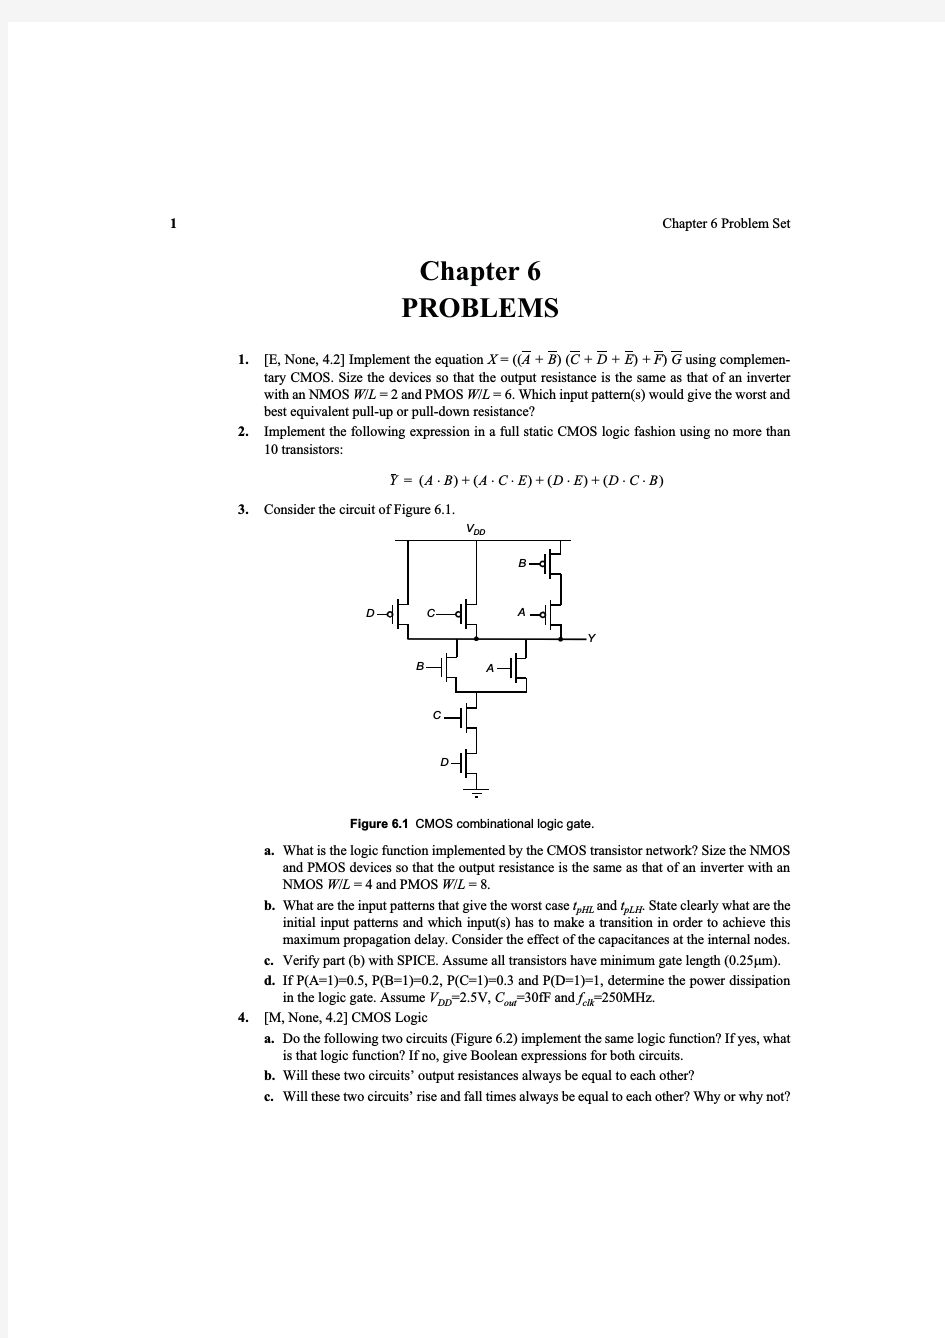 数字集成电路--电路、系统与设计(第二版)课后练习题  第六章 CMOS组合逻辑门的设计-Chapter 6 Designing